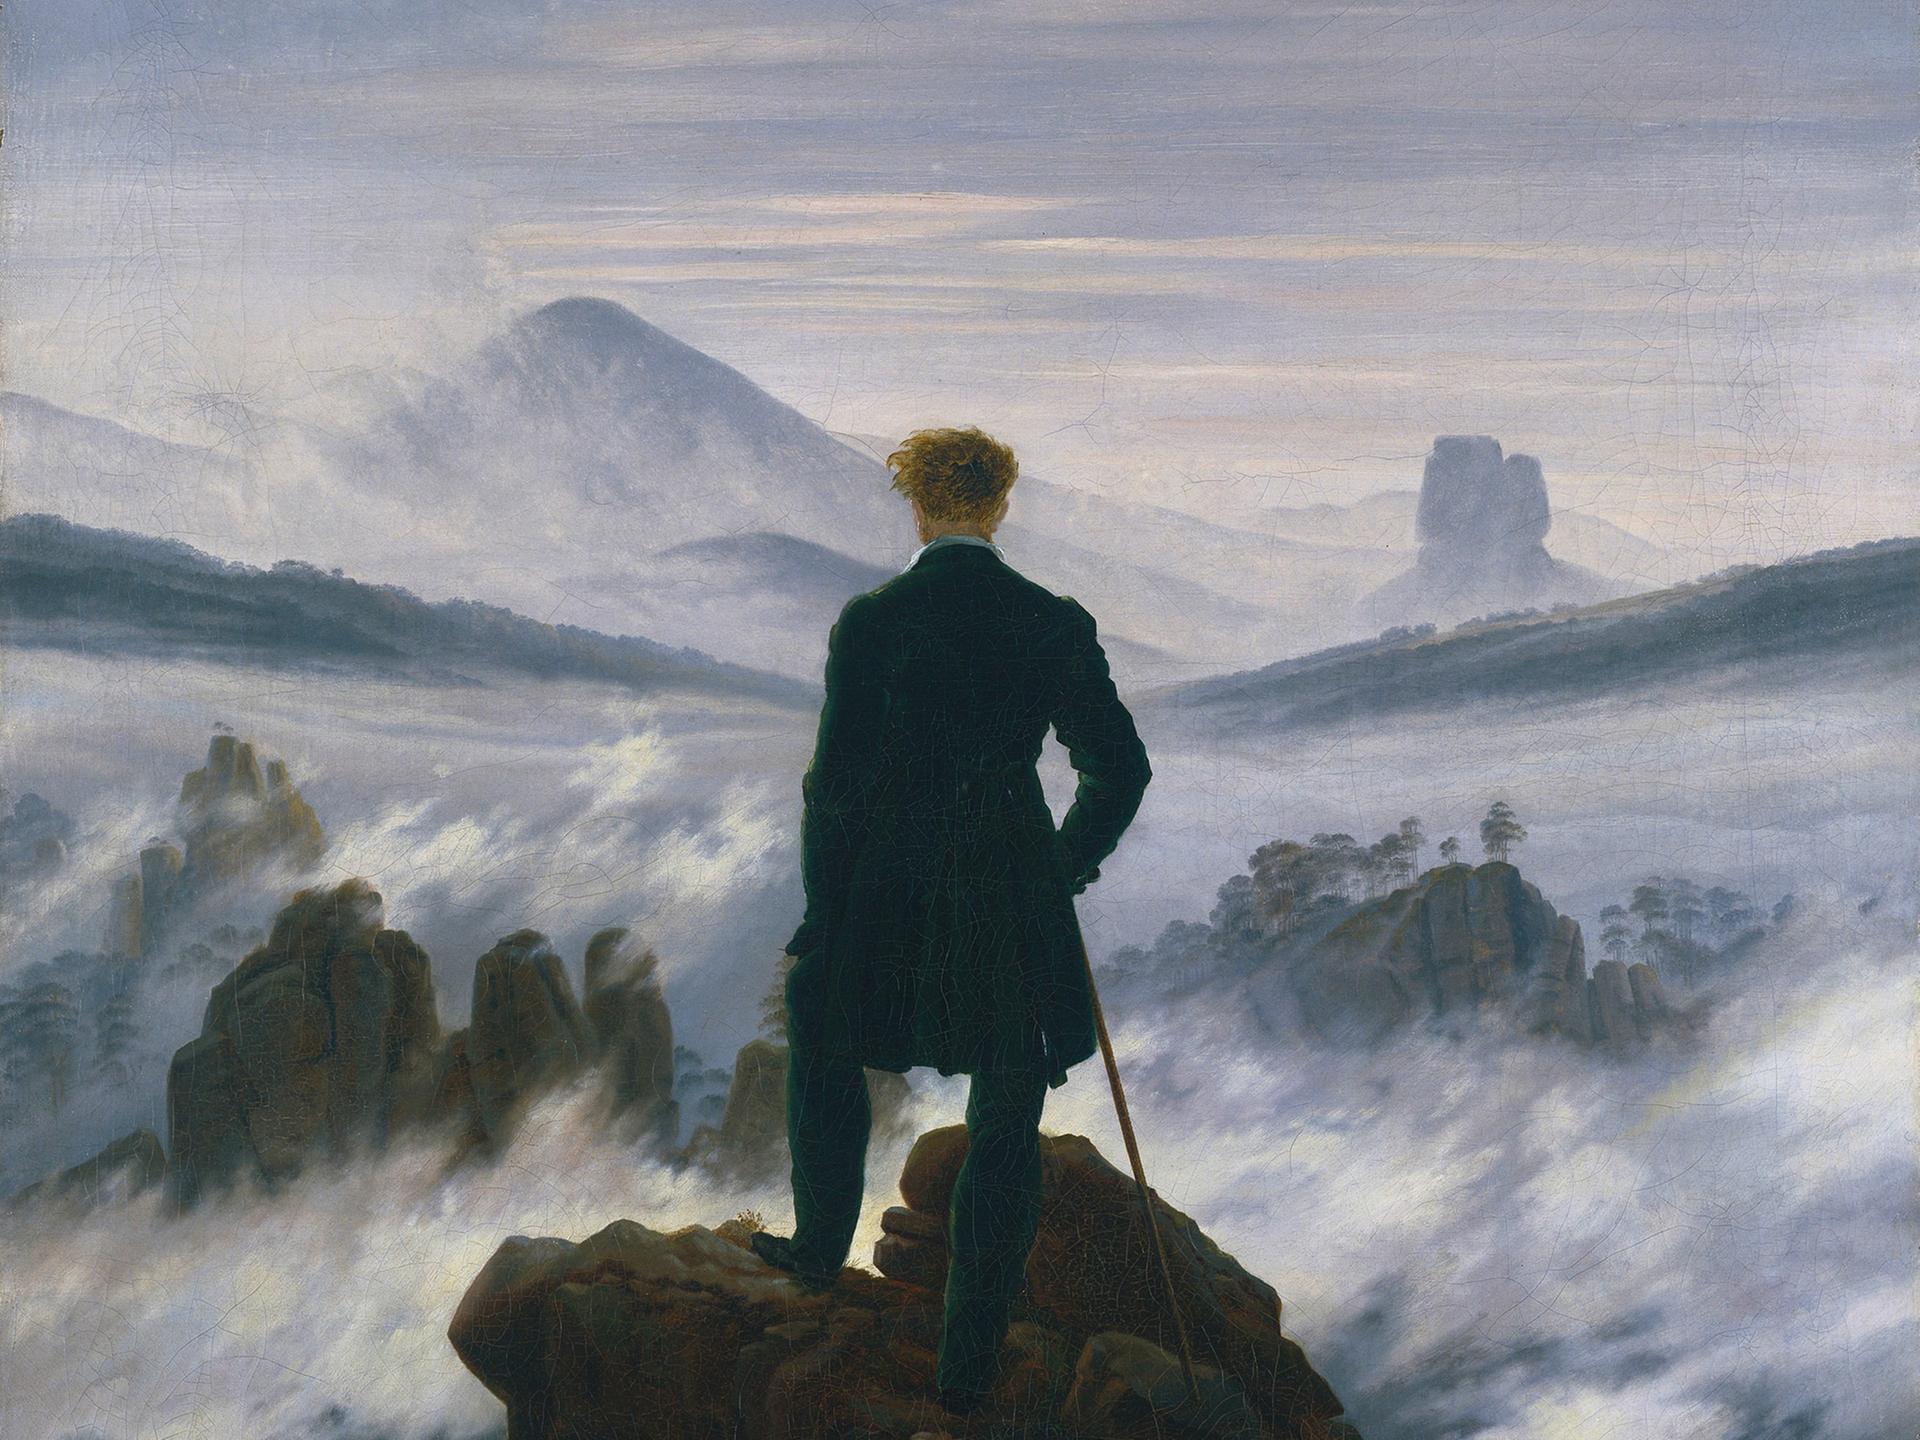 Caspar David Friedrichs Gemälde "Wanderer über dem Nebelmeer" zeigt in der Bildmitte einen Mann in Rückenansicht der auf dem Gipfel eines Berges steht (Â© Fine Art Images/Heritage Images)